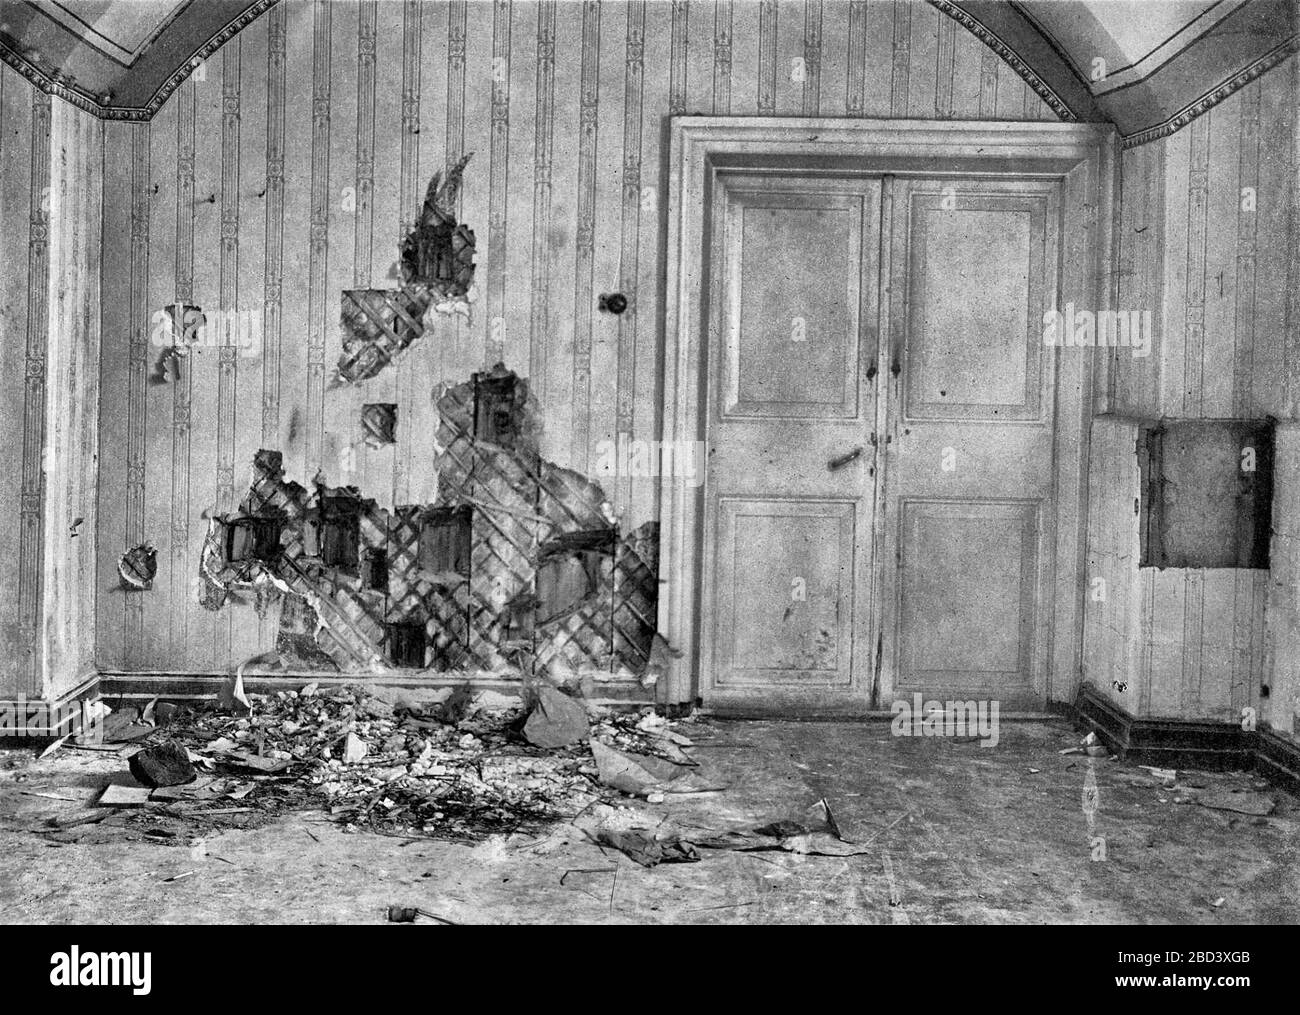 En el sótano de la casa de Ipatiev donde la familia Romanov fue asesinada, el muro ha sido destrozado en busca de balas y otras pruebas por parte de los investigadores después del tiroteo, entre alrededor de 1918 y alrededor de 1919 Foto de stock